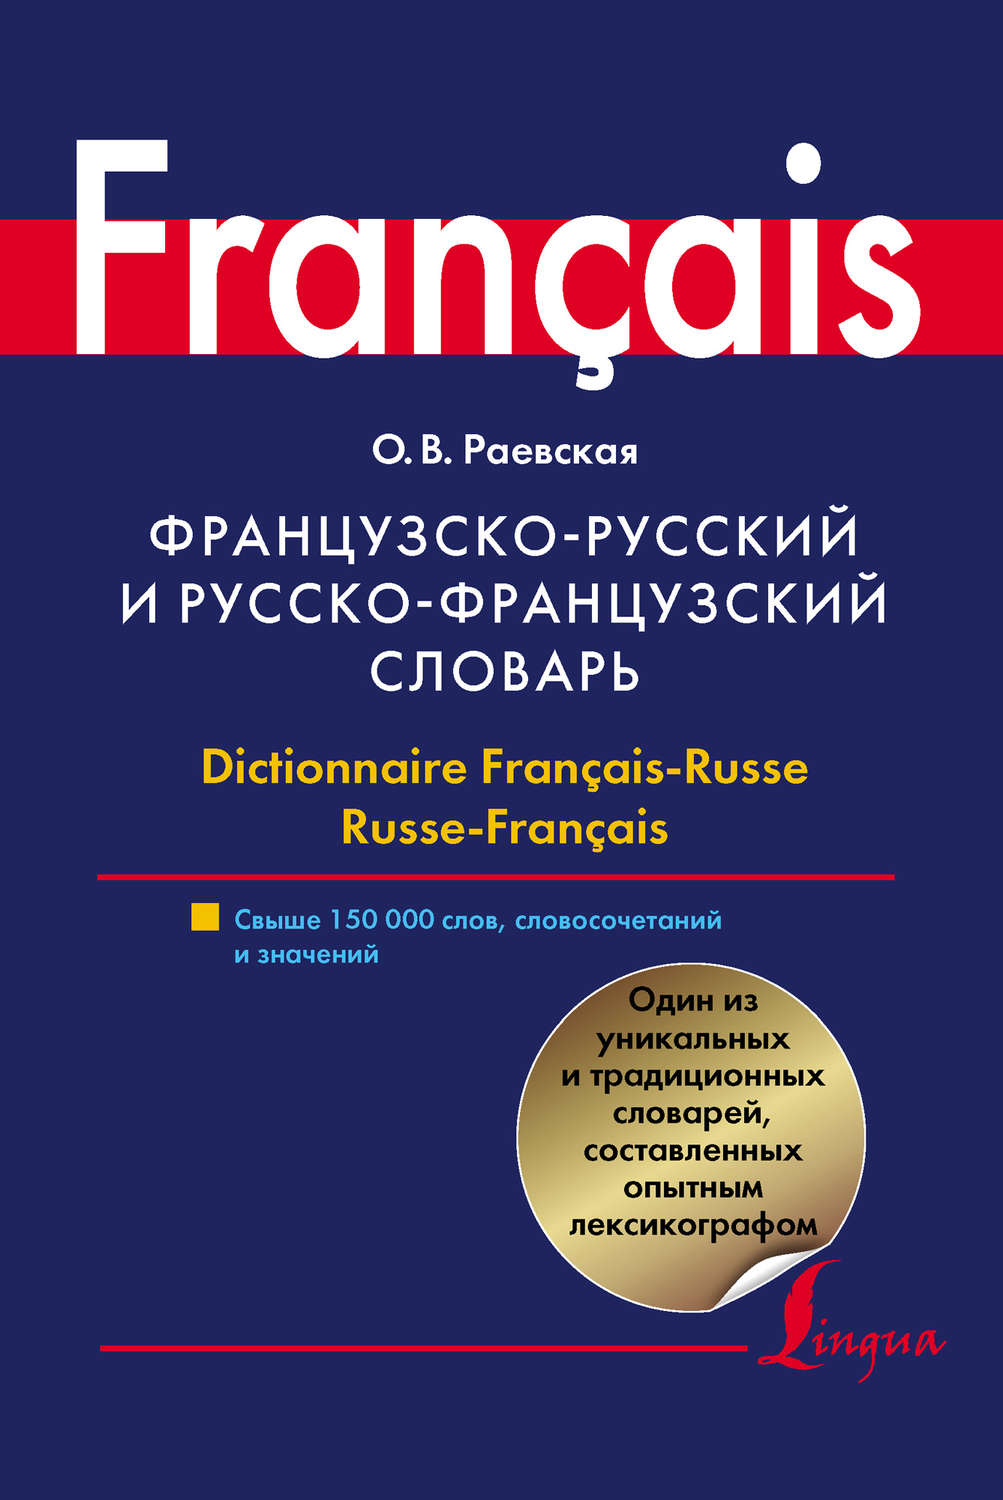 Словарь французского языка